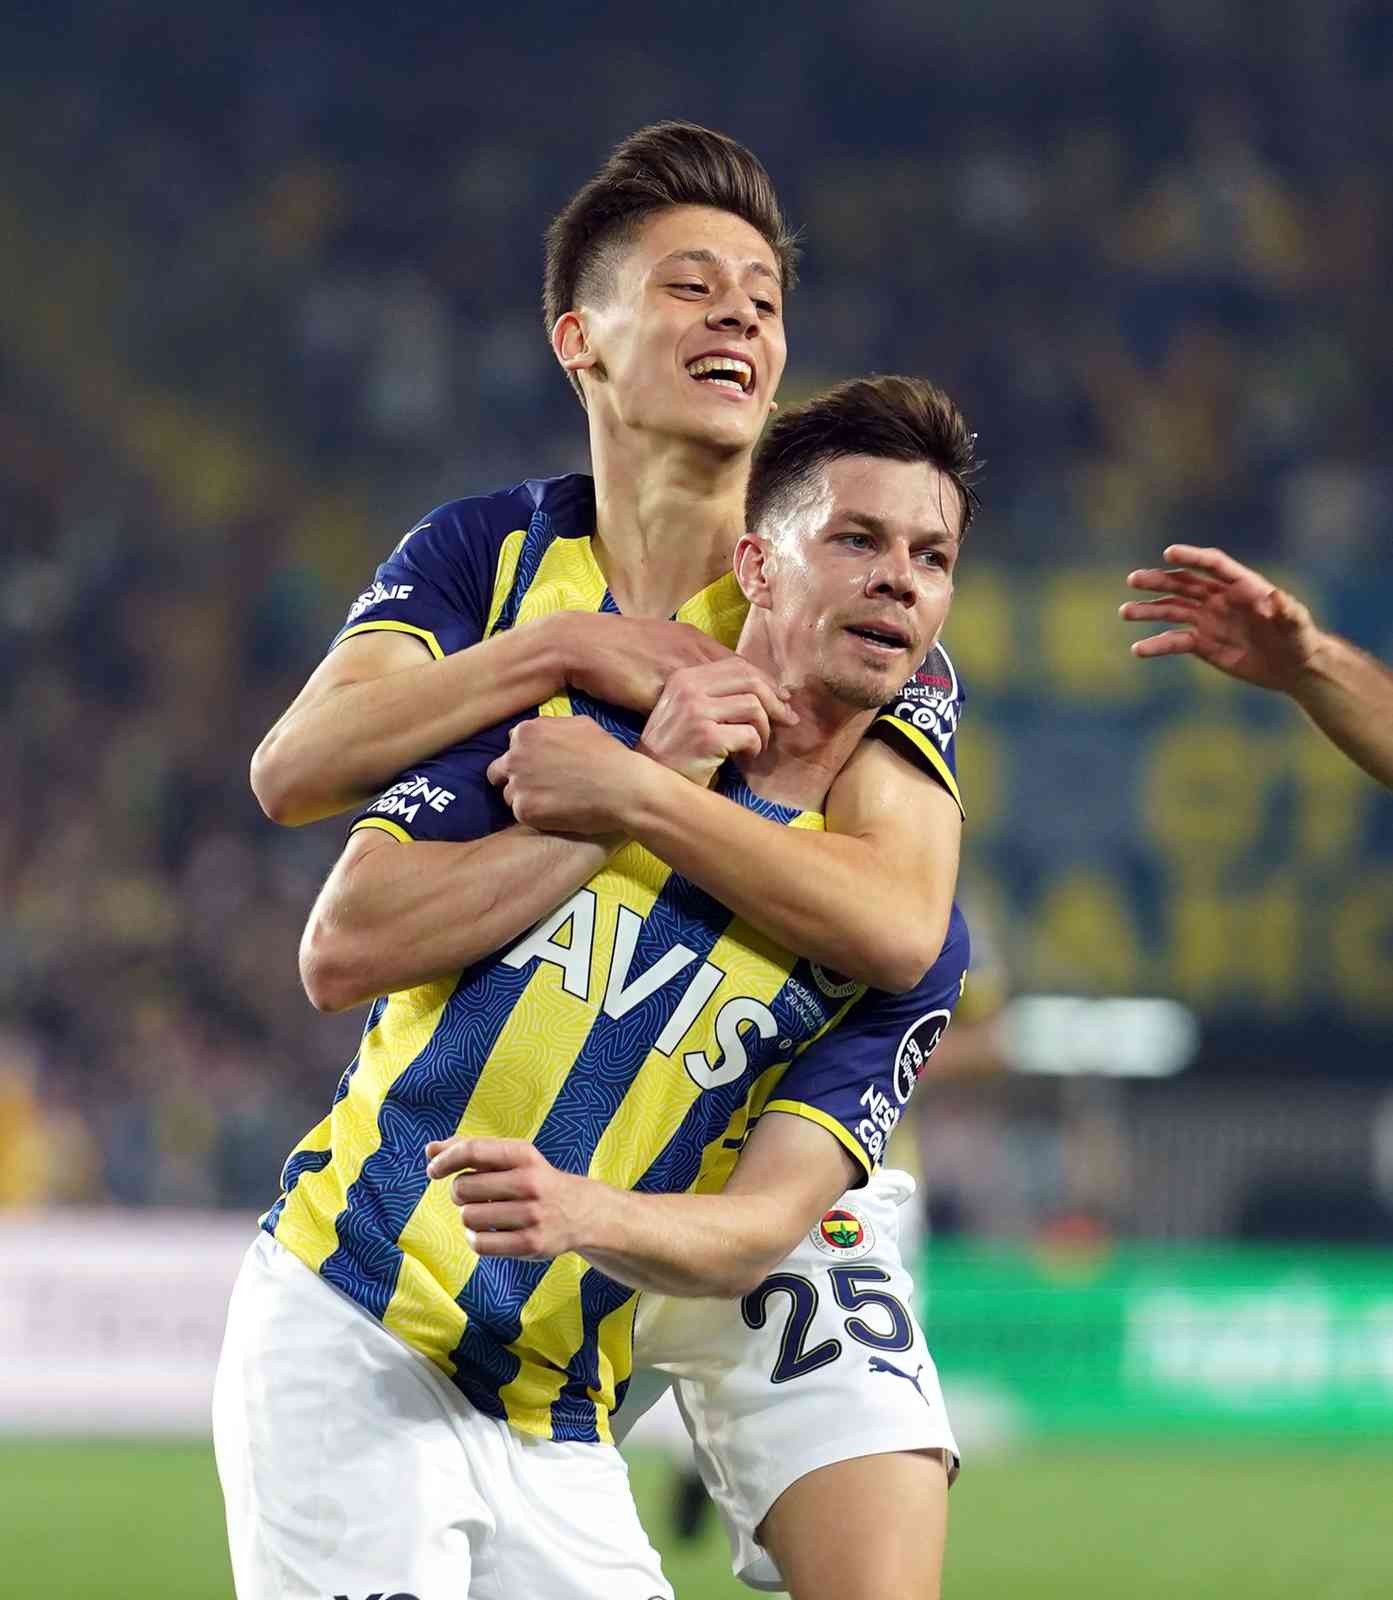 Spor Toto Süper Lig’in 35. haftasında Fenerbahçe, sahasında karşılaştığı Gaziantep FK’yı 3-2 mağlup etti. Maçtan dakikalar (İkinci yarı) 53 ...